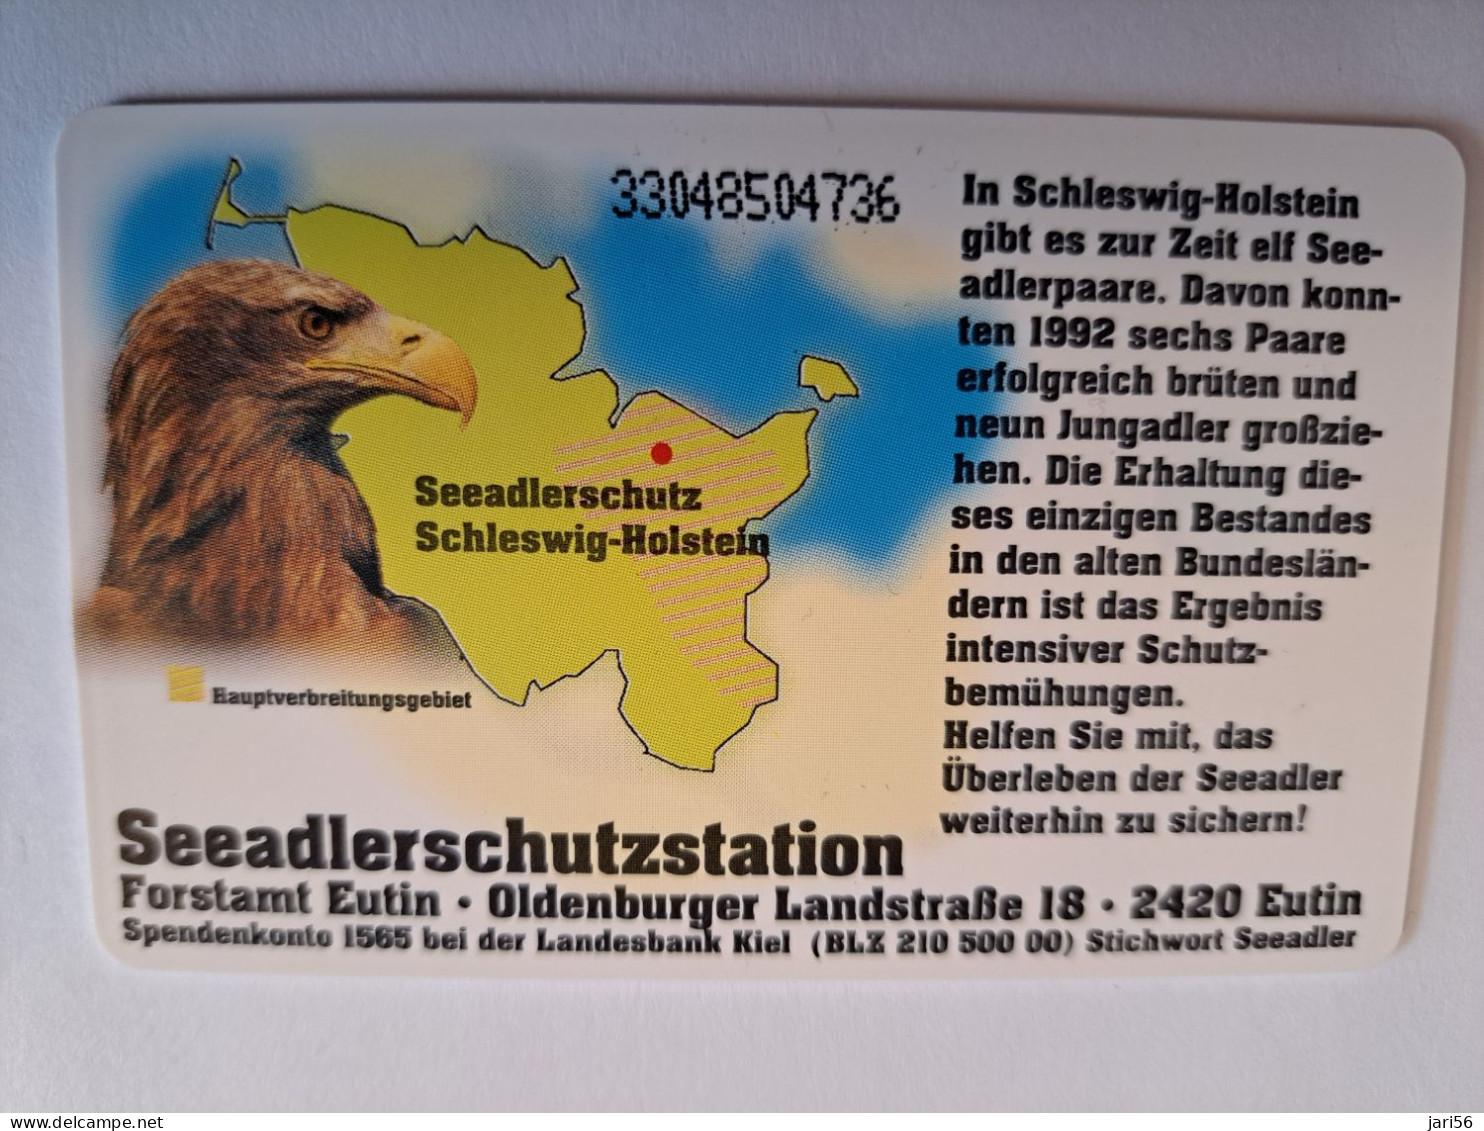 DUITSLAND/ GERMANY  CHIPCARD/ SEA/ EAGLE/ BIRD/ NATUR  / 25.000  EX / 6 DM  CARD / O 708 / MINT CARD **16606** - S-Series : Guichets Publicité De Tiers